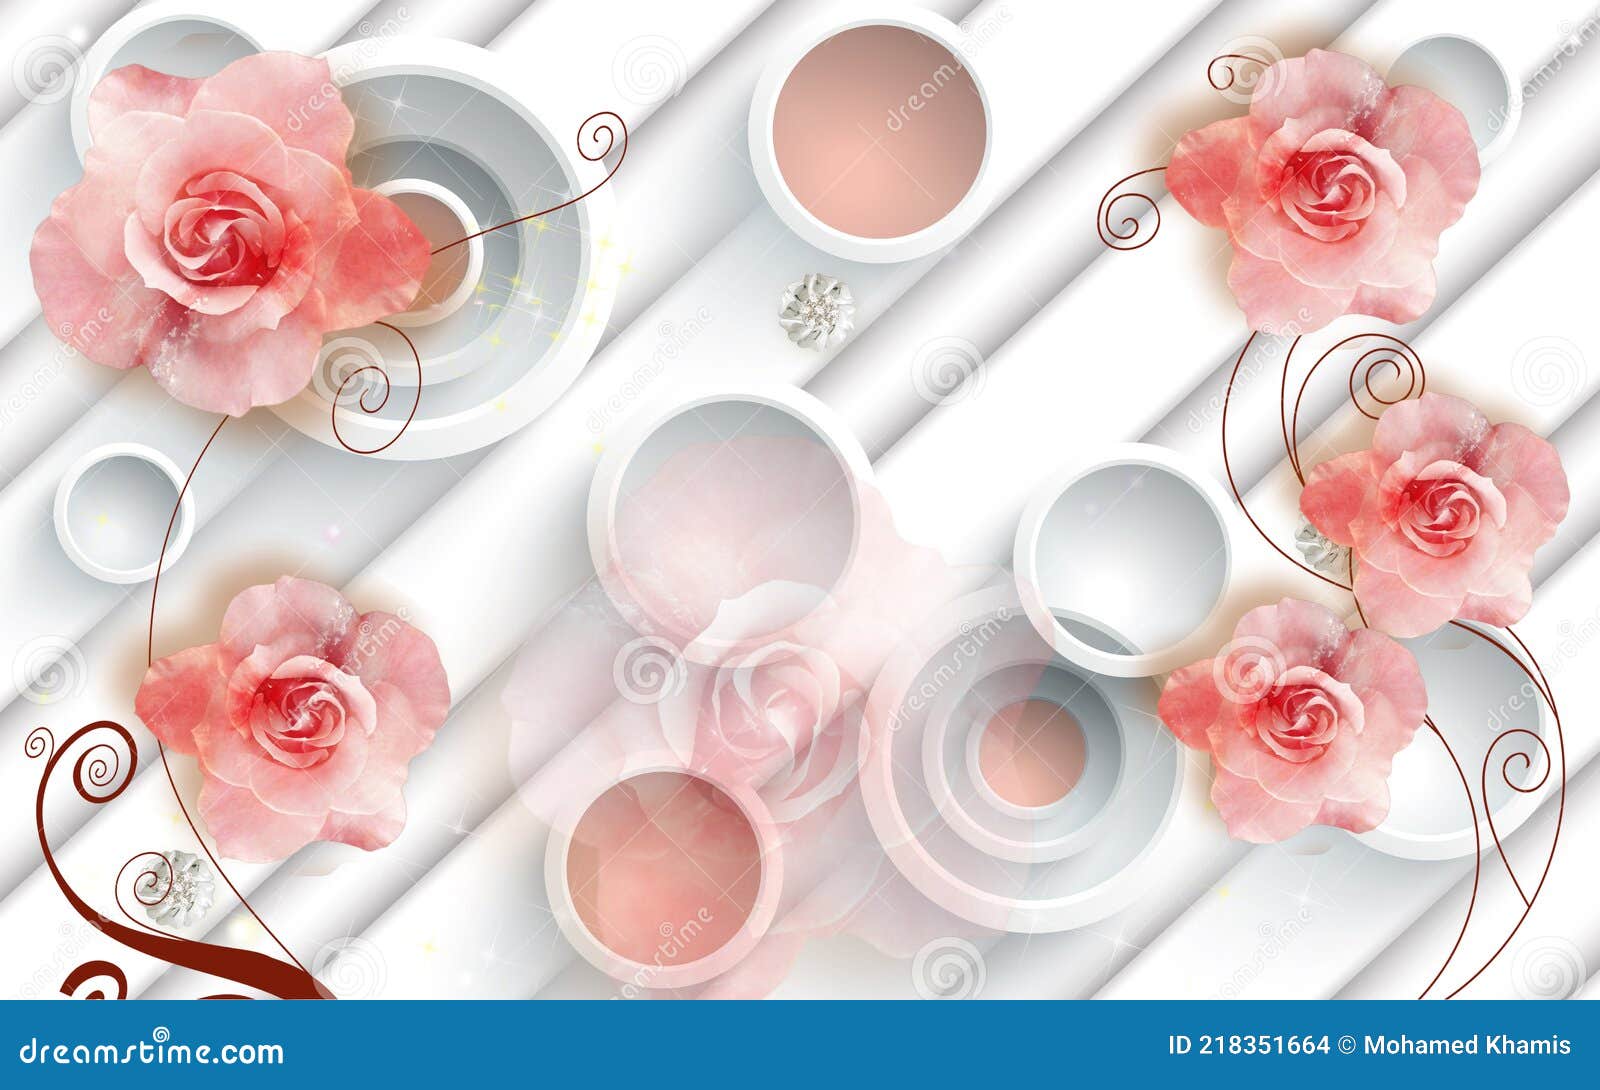 Top 48+ imagen imagenes de rosas para fondo de pantalla -  